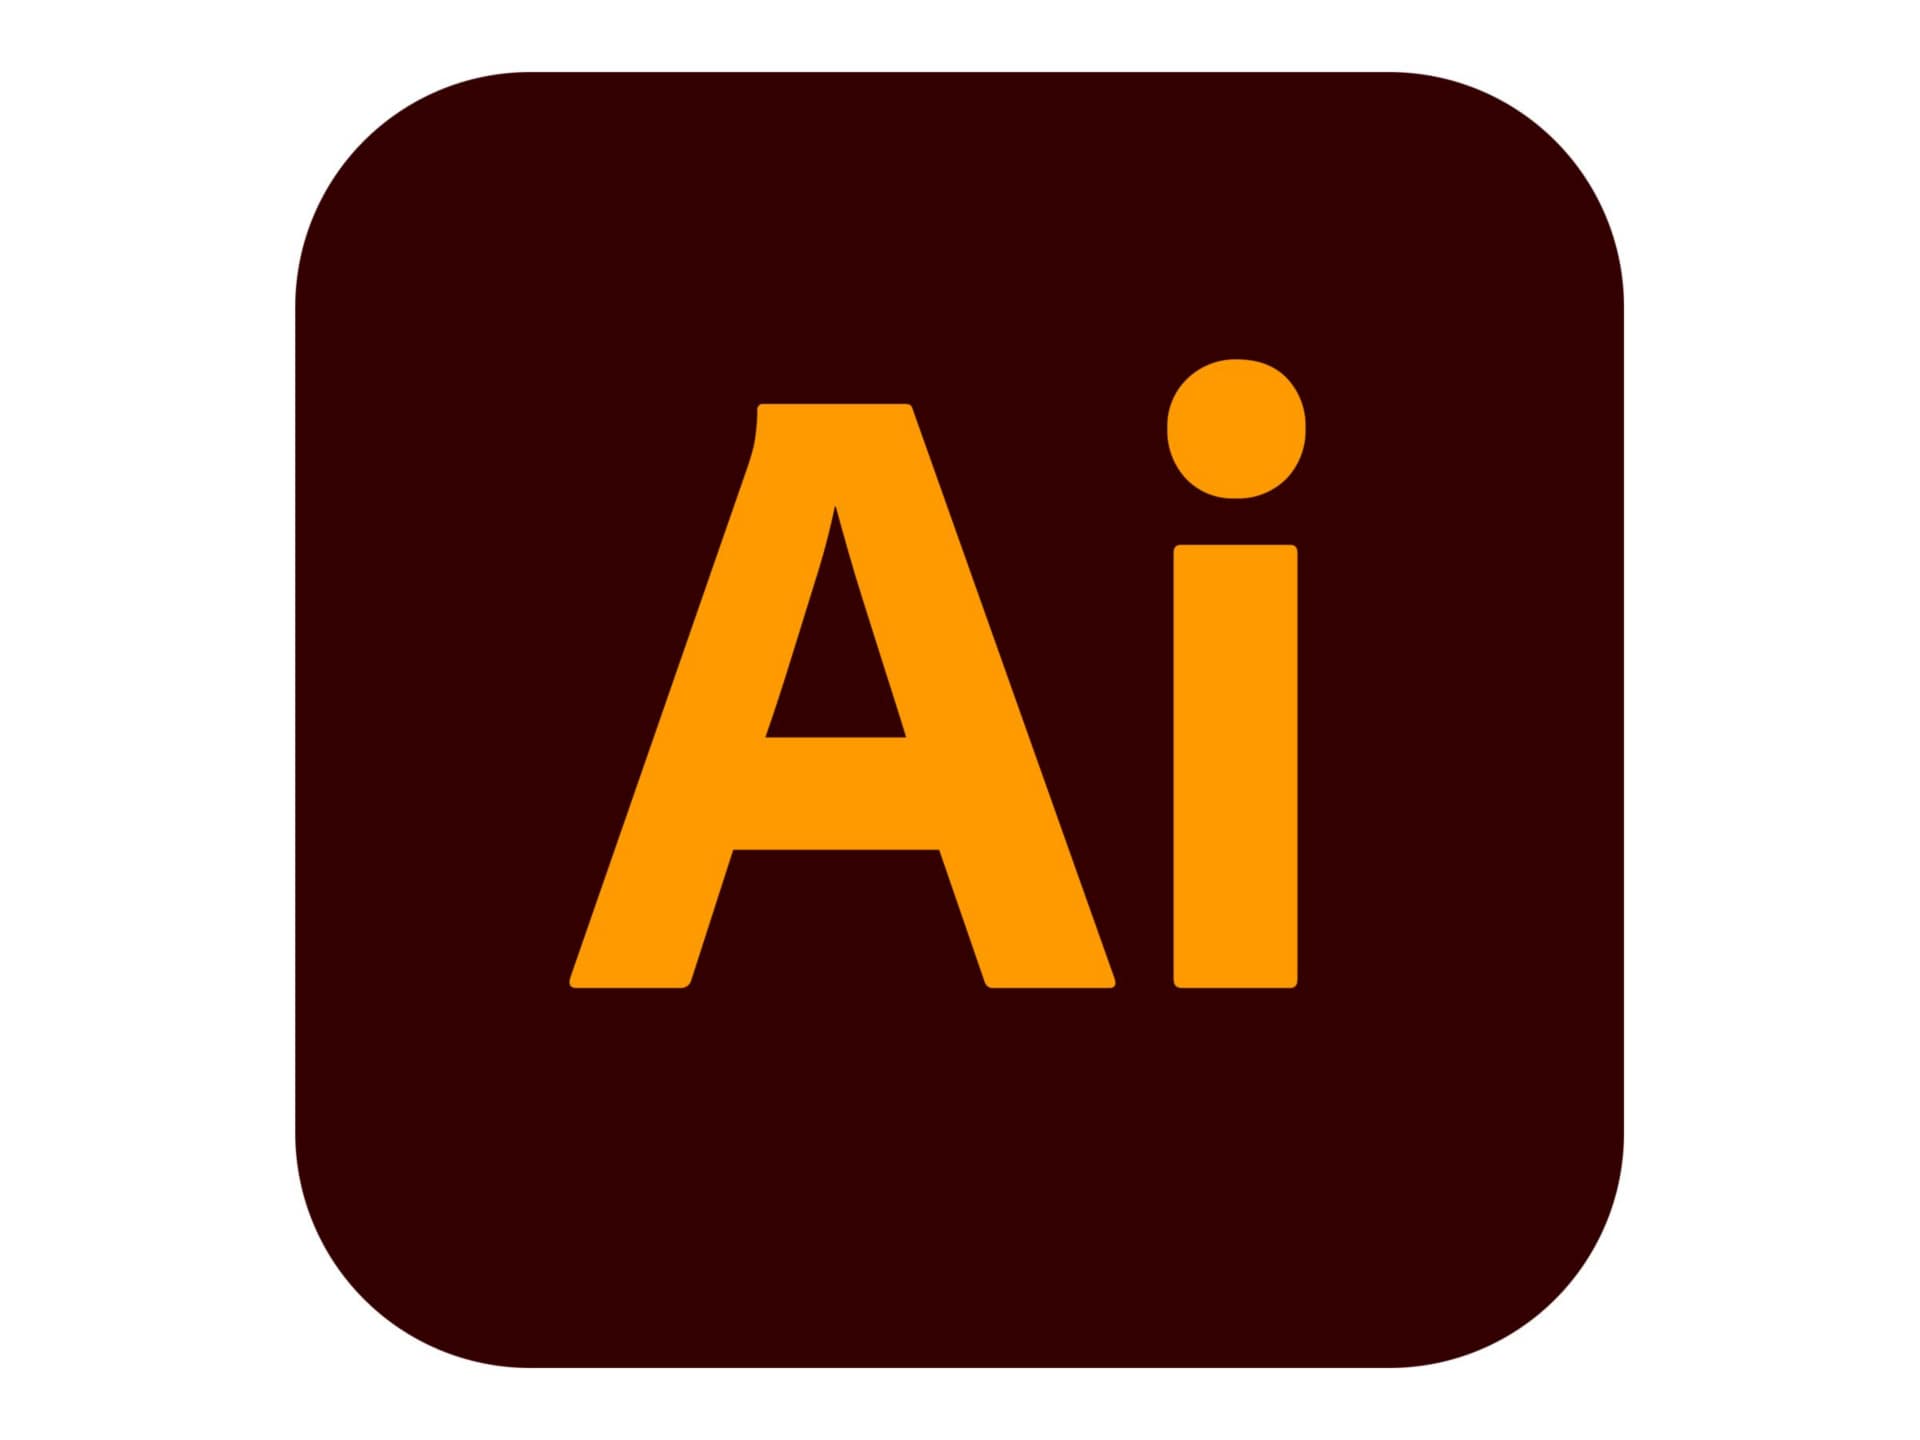 Adobe Illustrator CC for Enterprise - Subscription New - 1 named user